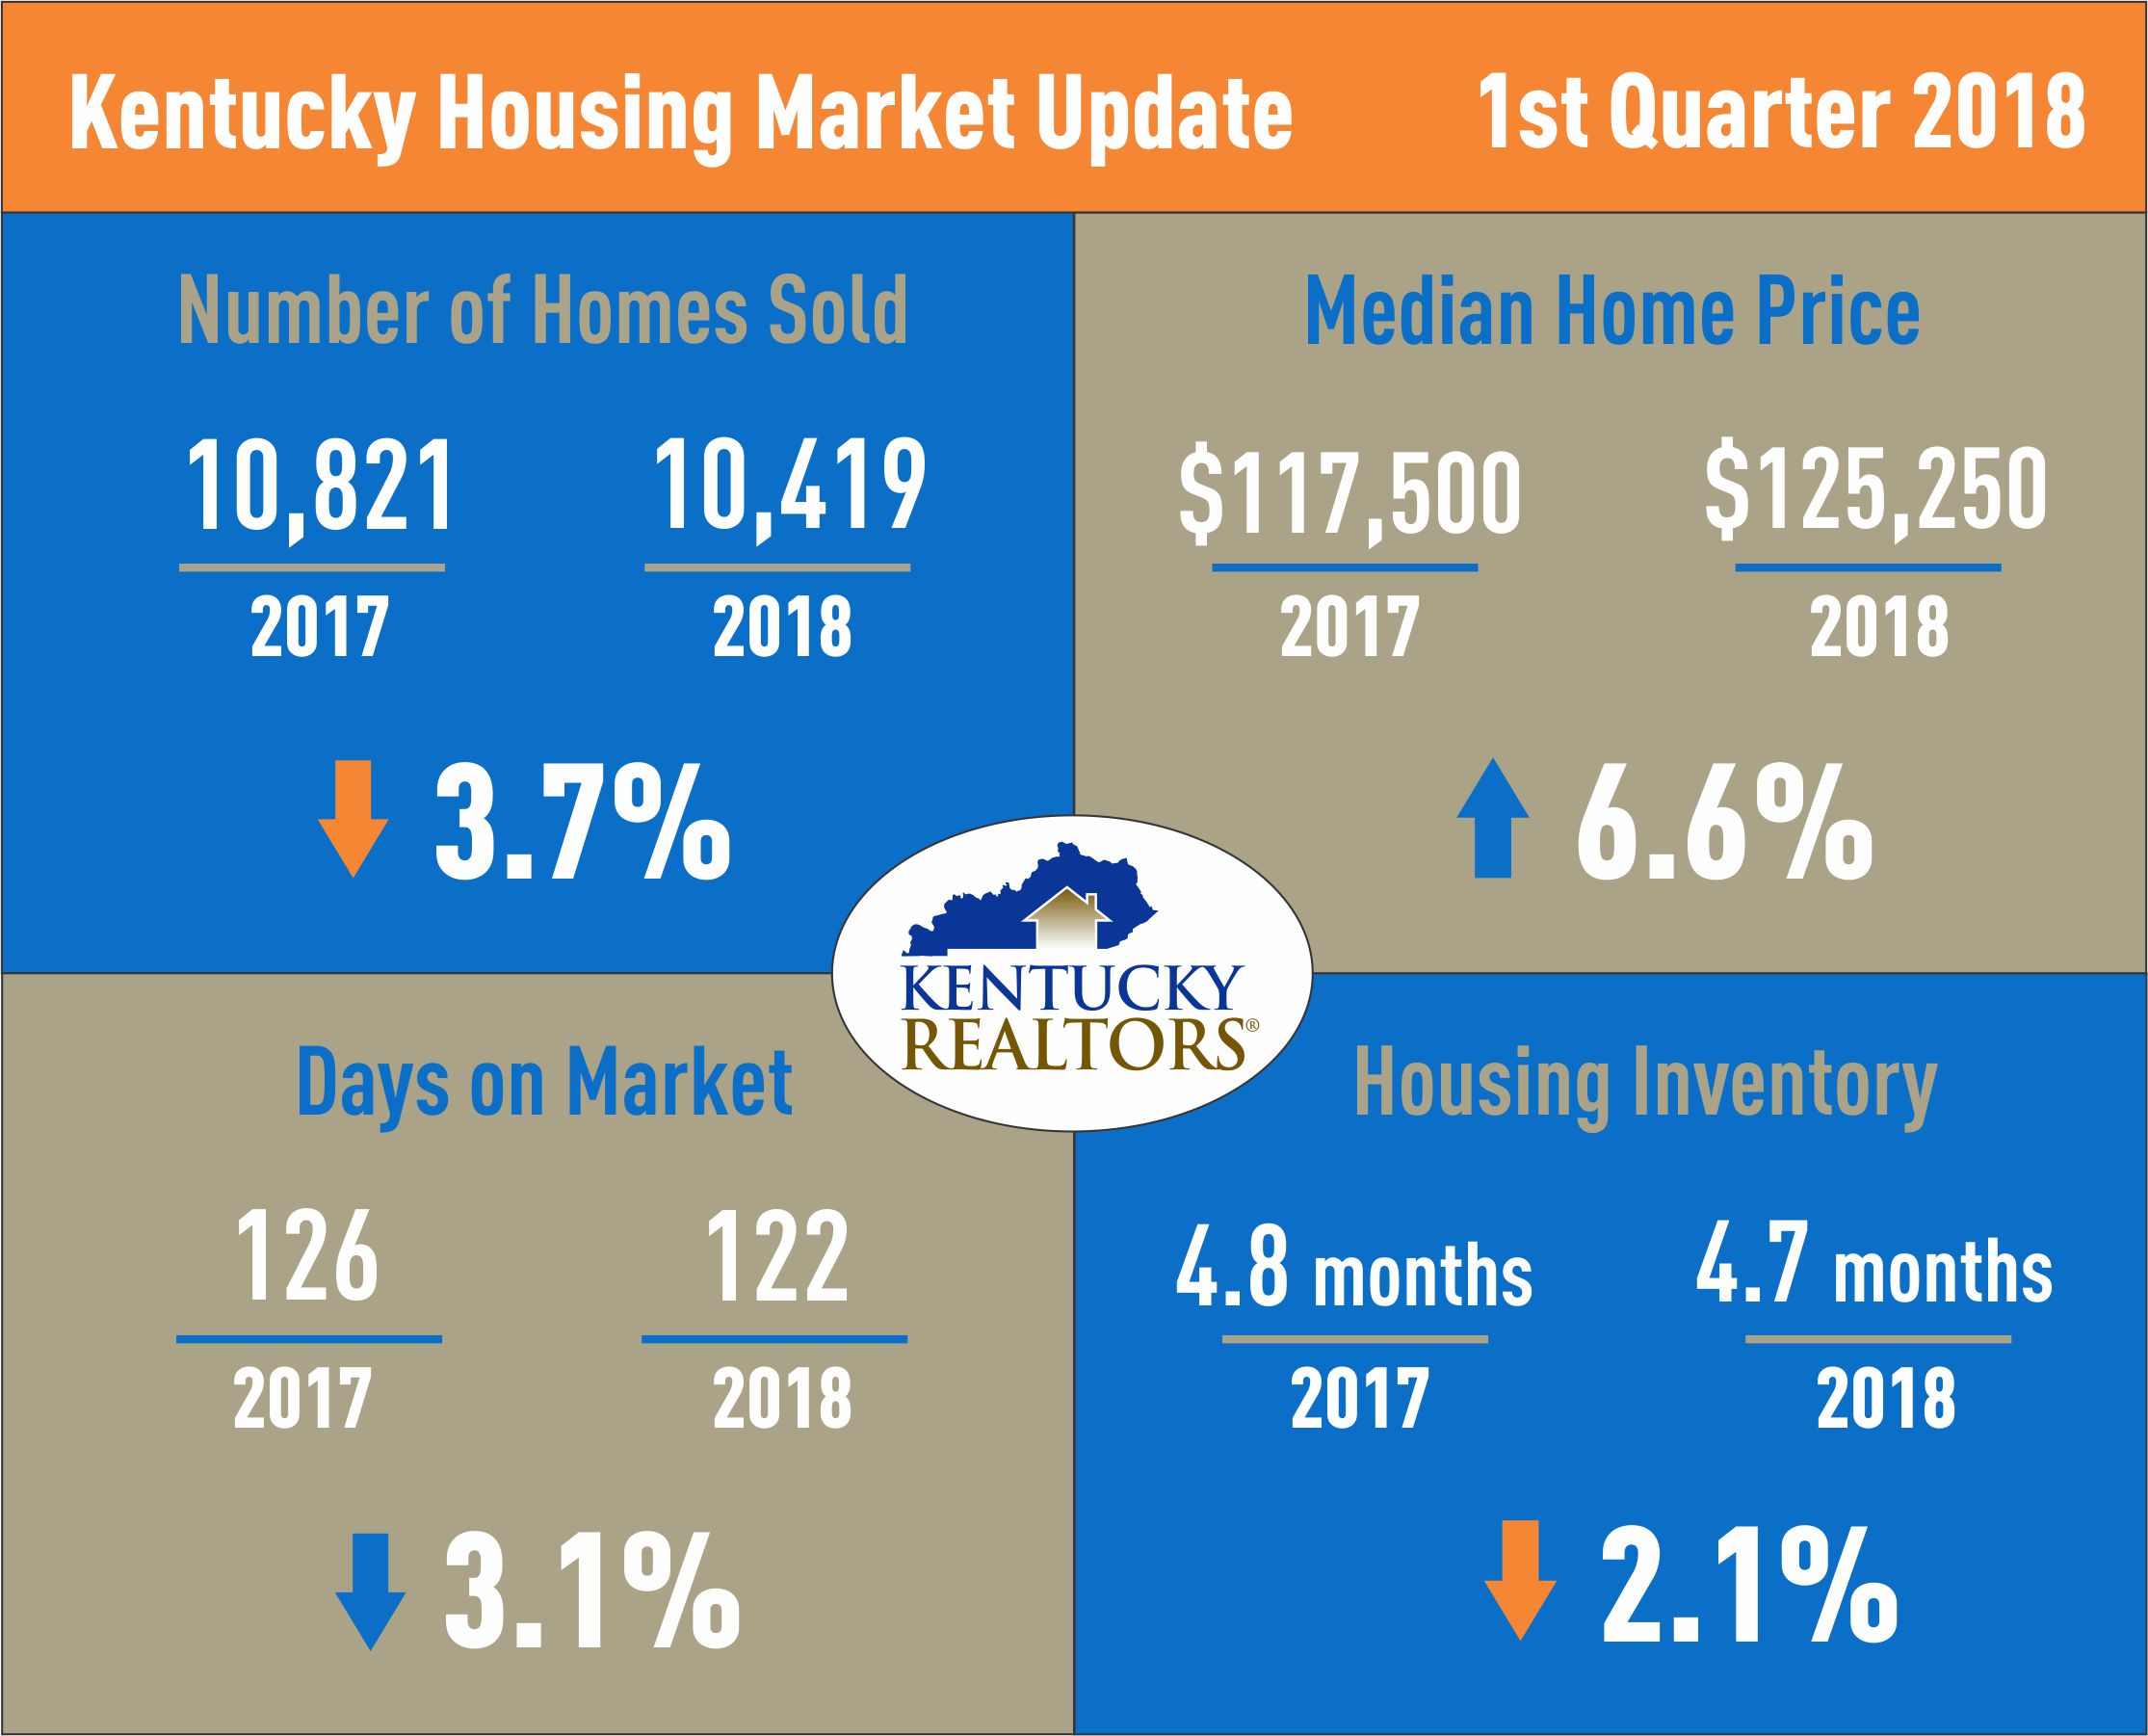 Kentucky Housing Market Update March 2018